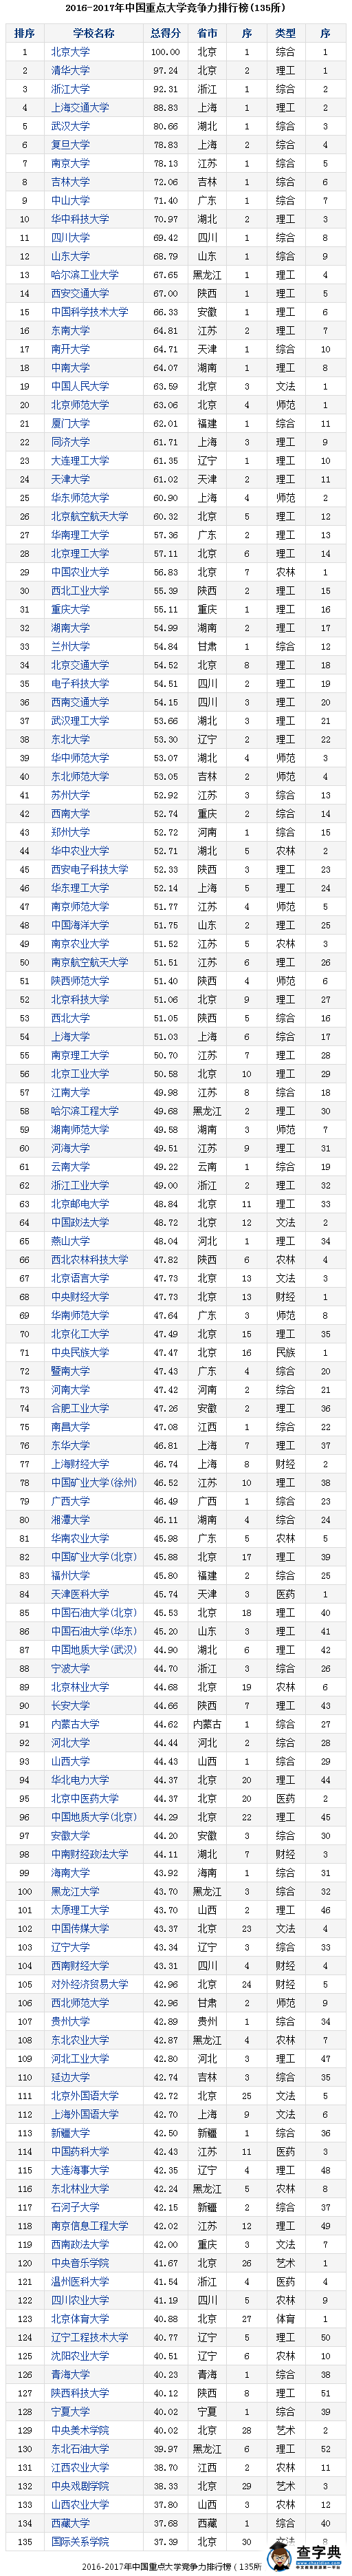 武大版2016年135所中国重点大学竞争力排行榜